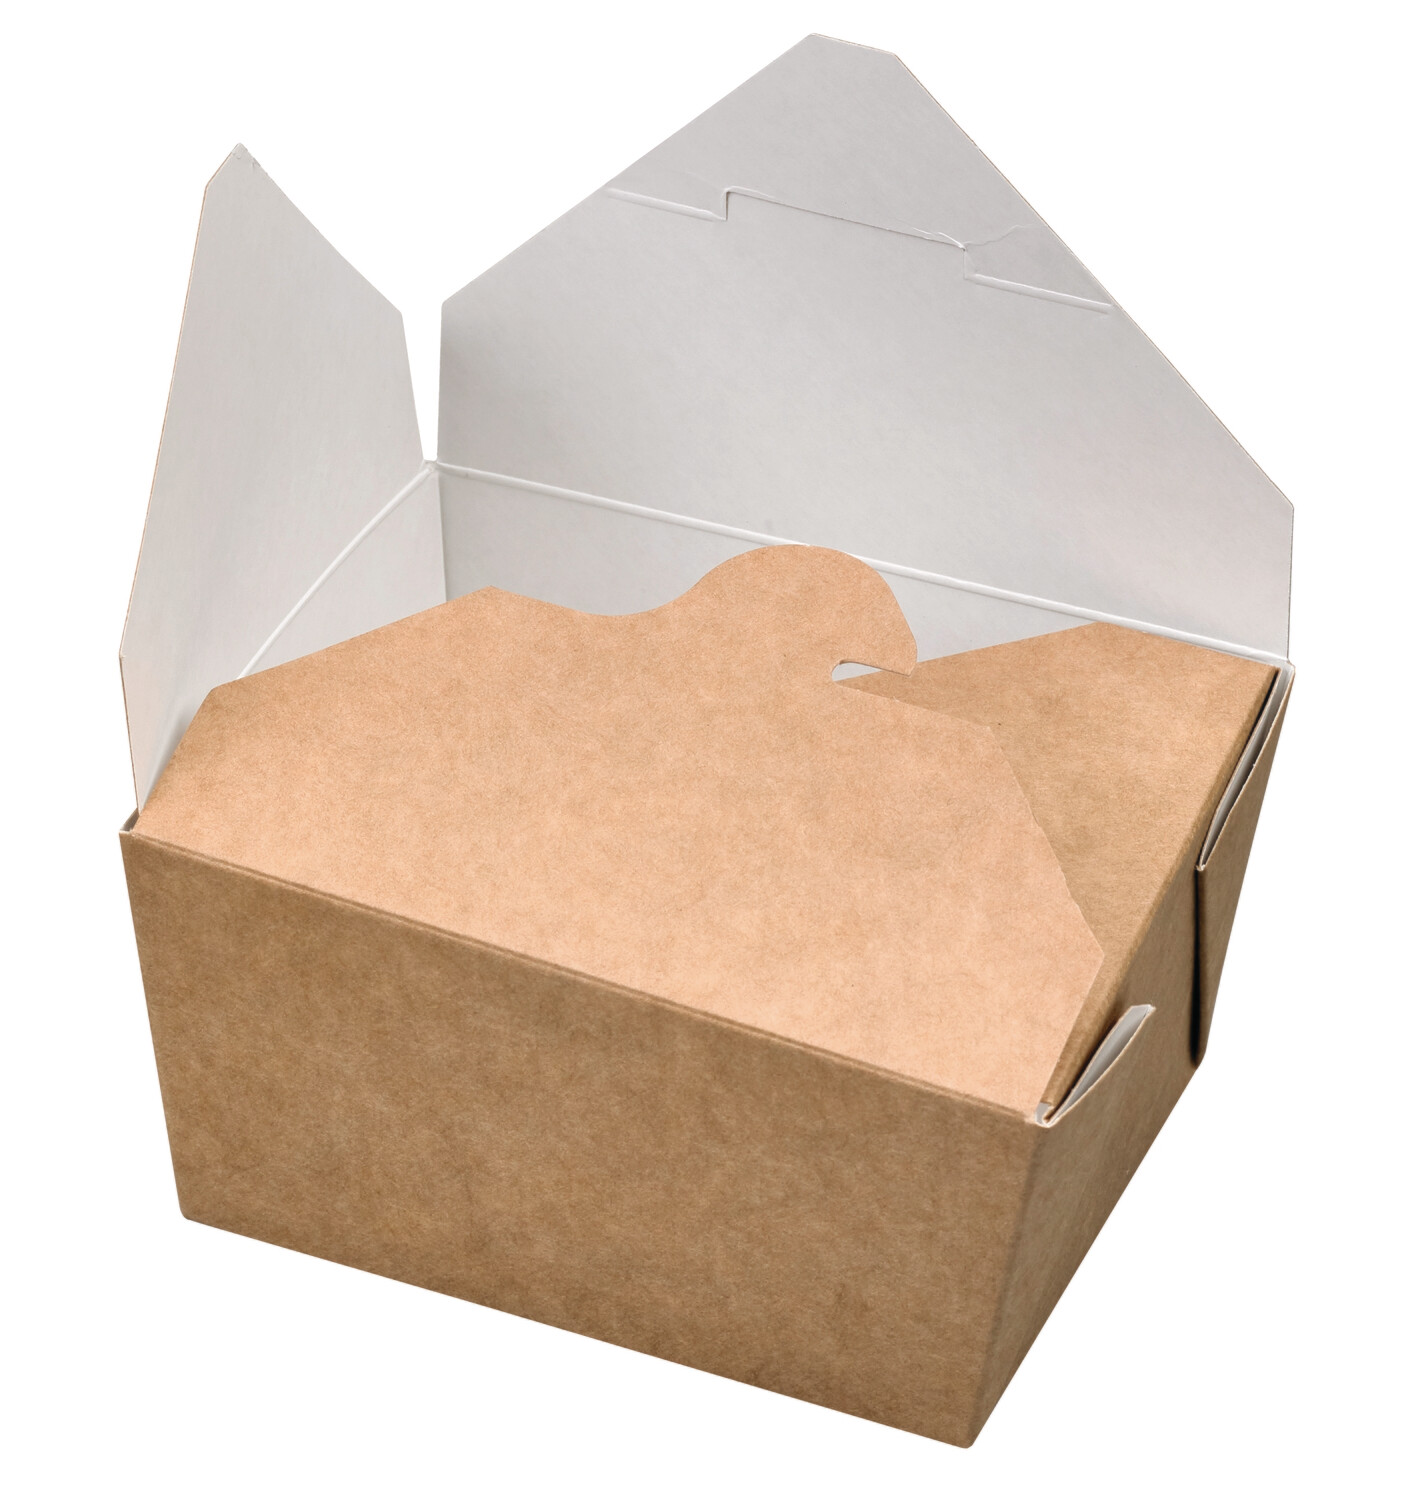 Firstpack - Essensboxen aus Karton 13x10,5x6,5 cm